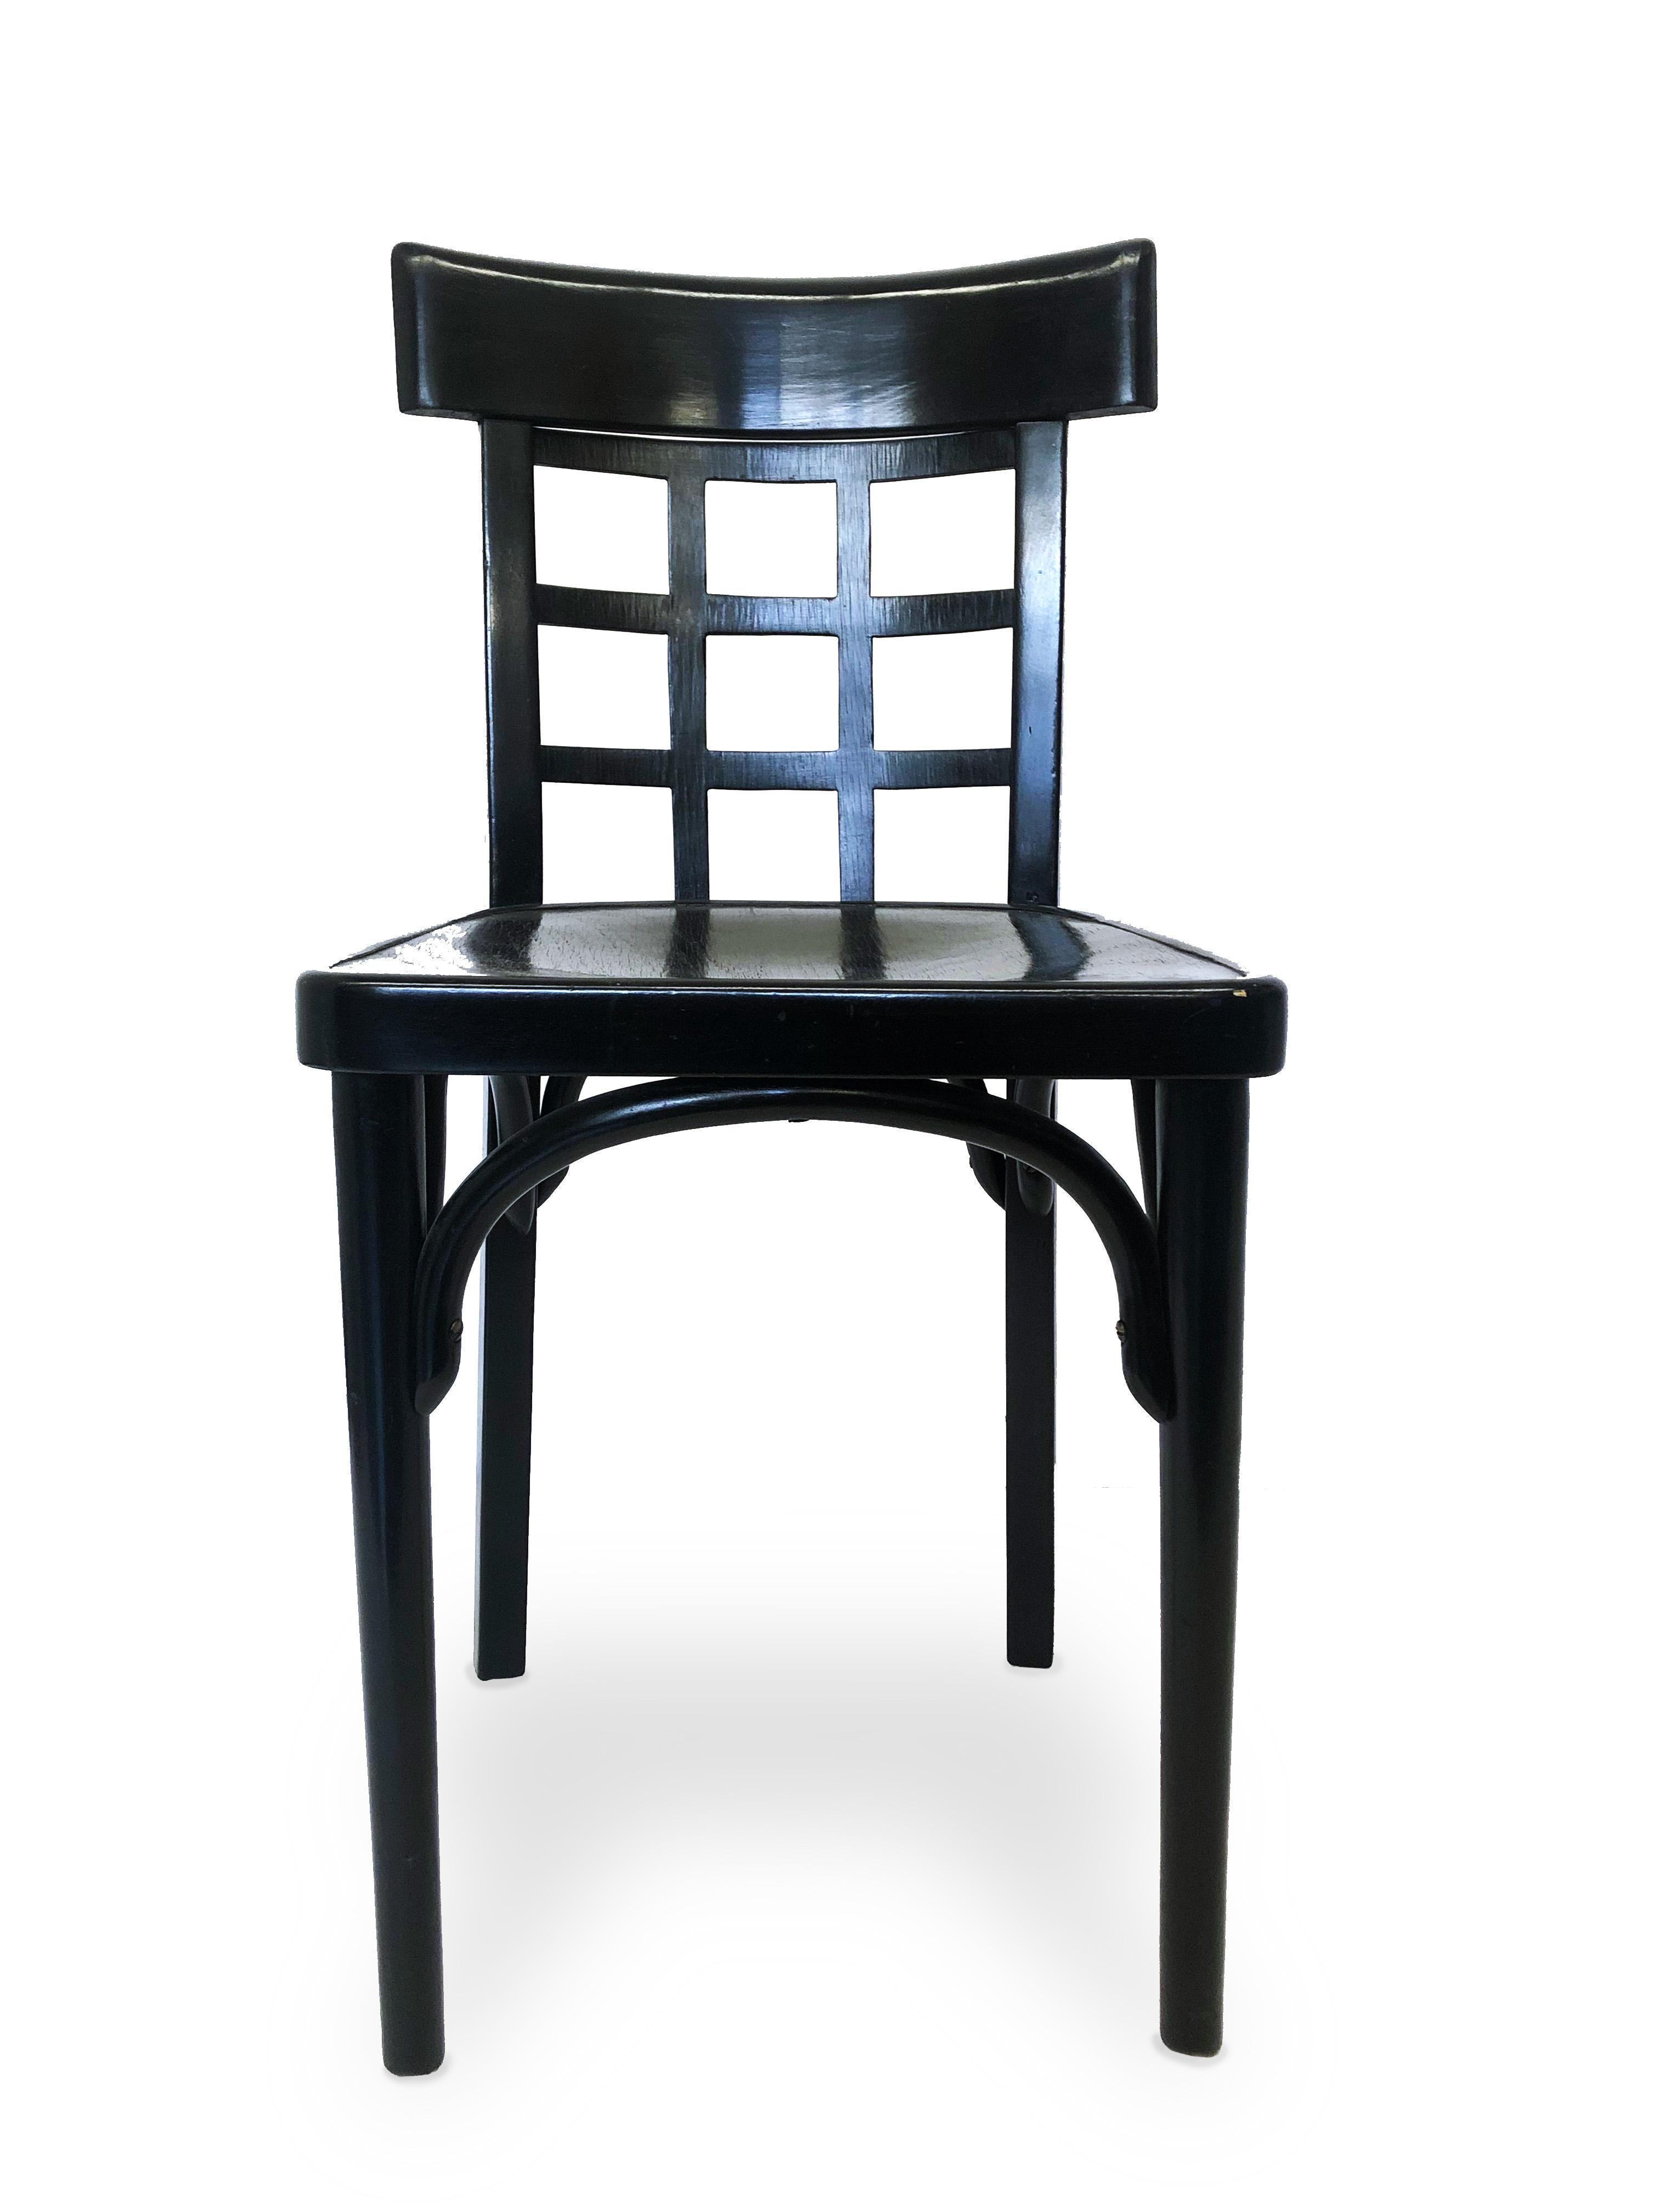 Paire de chaises de salle à manger de la succession de Vienne à dossier grillagé en bois de hêtre ébénisé par J. & J. Kohn, vers 1925.

Propriété de l'estimable designer d'intérieur Juan Montoya. Juan Montoya est l'un des designers d'intérieur les